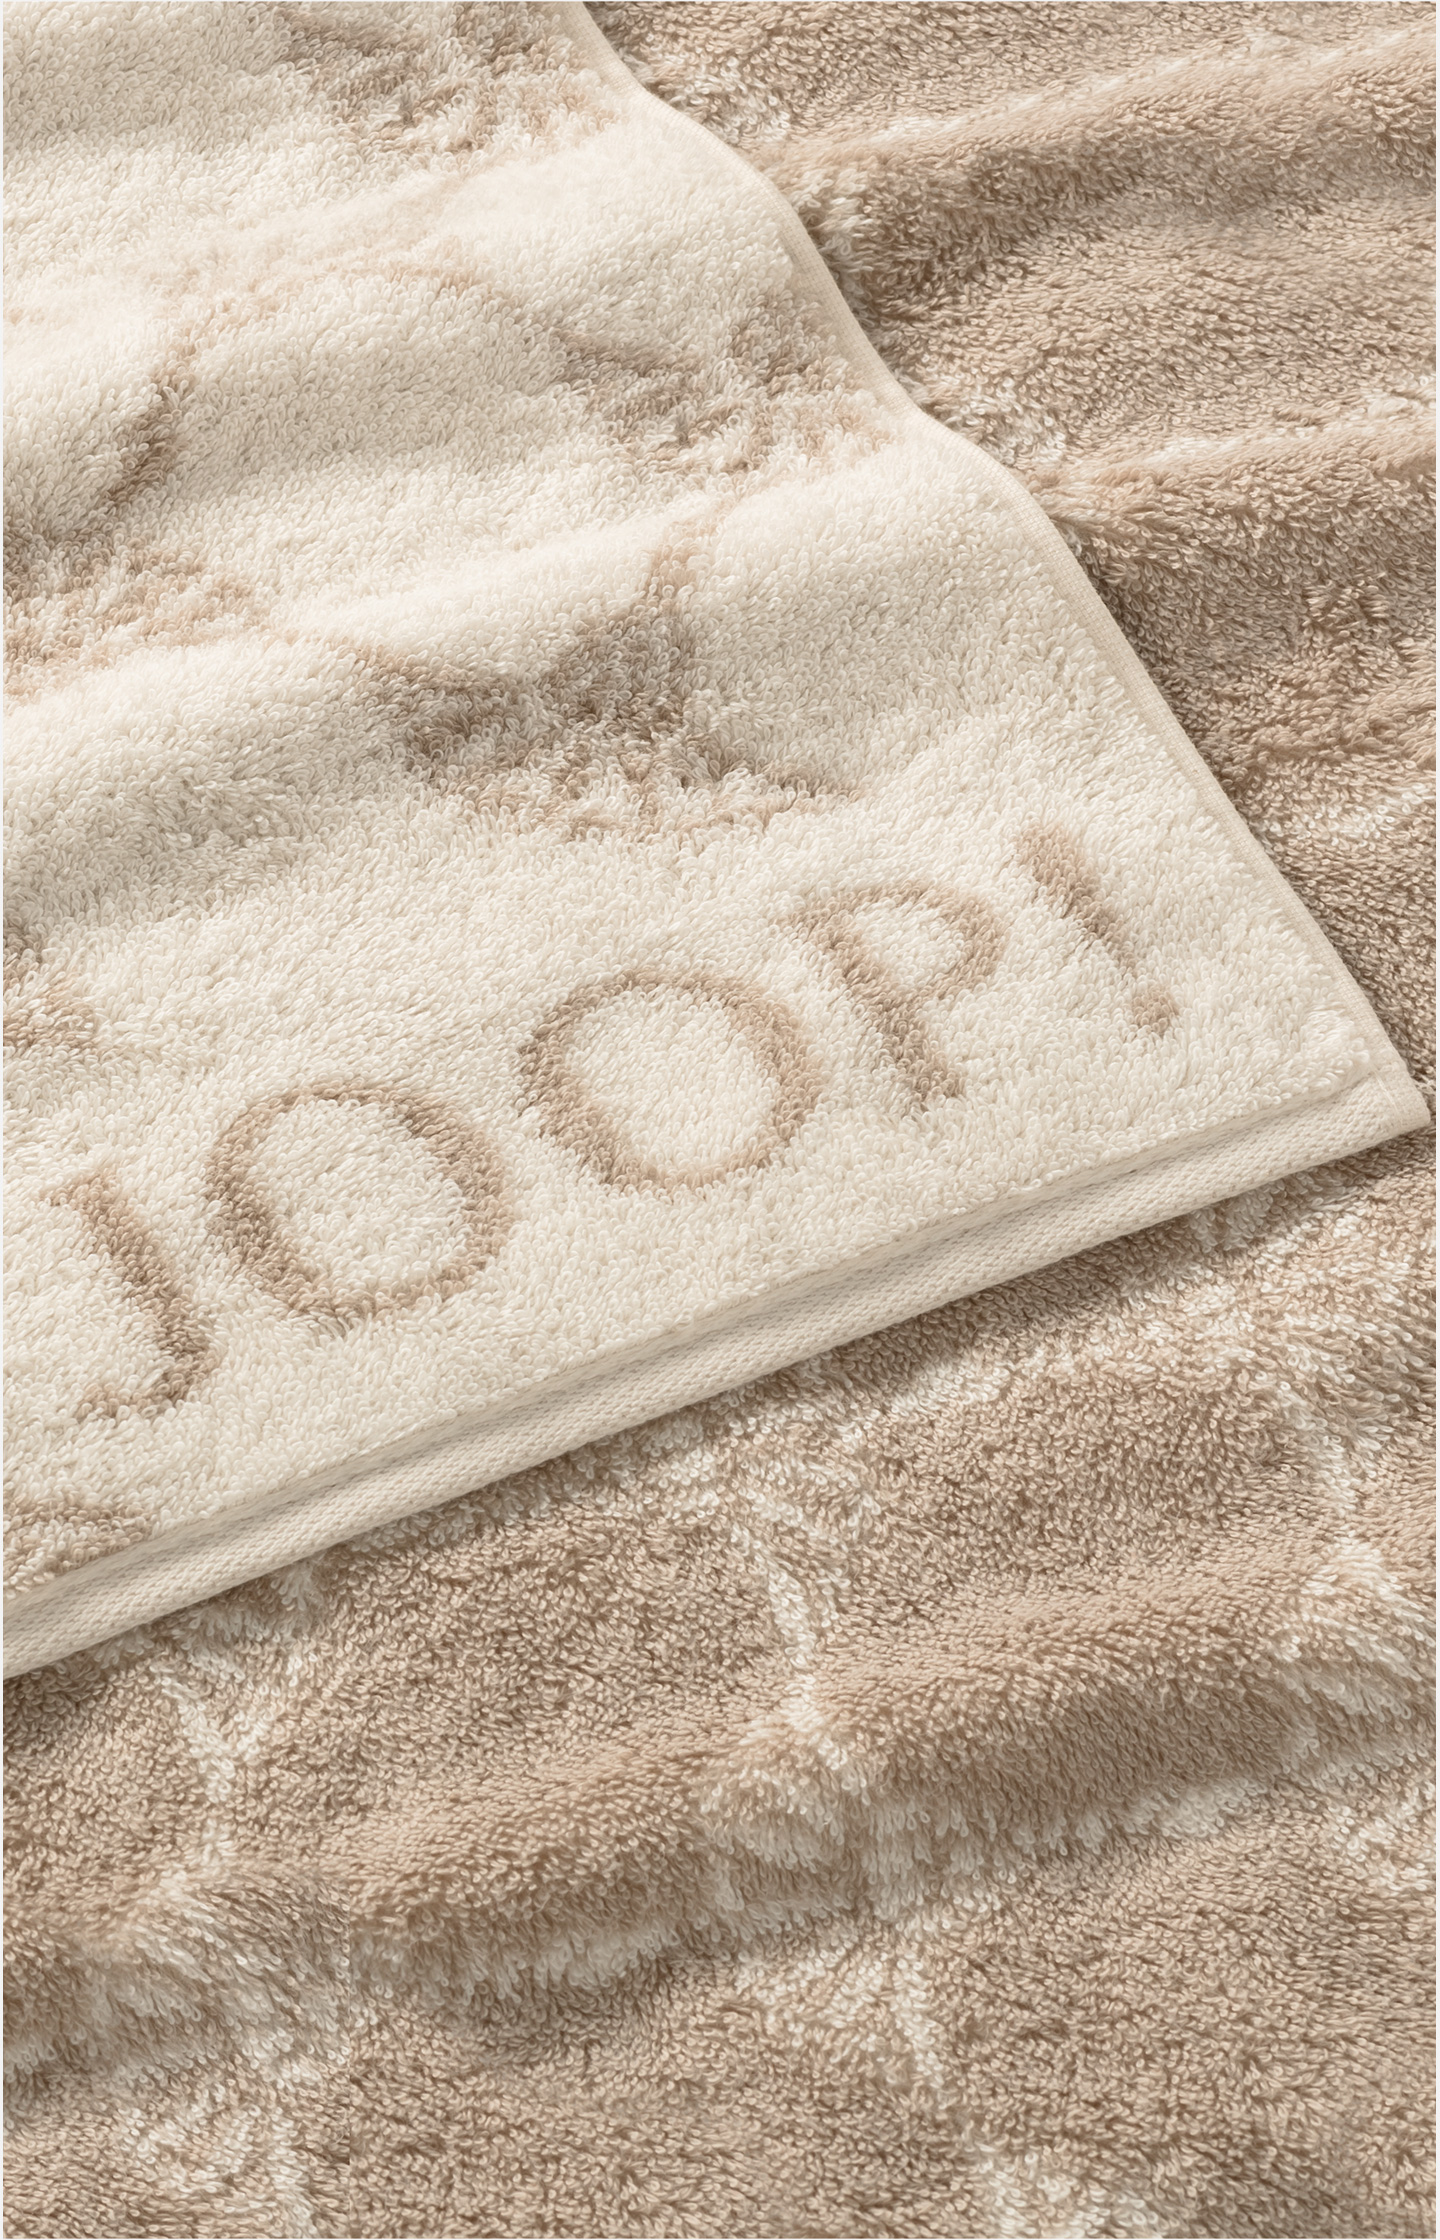 - Online Shop JOOP! Cream JOOP! in CLASSIC Towel in the CORNFLOWER